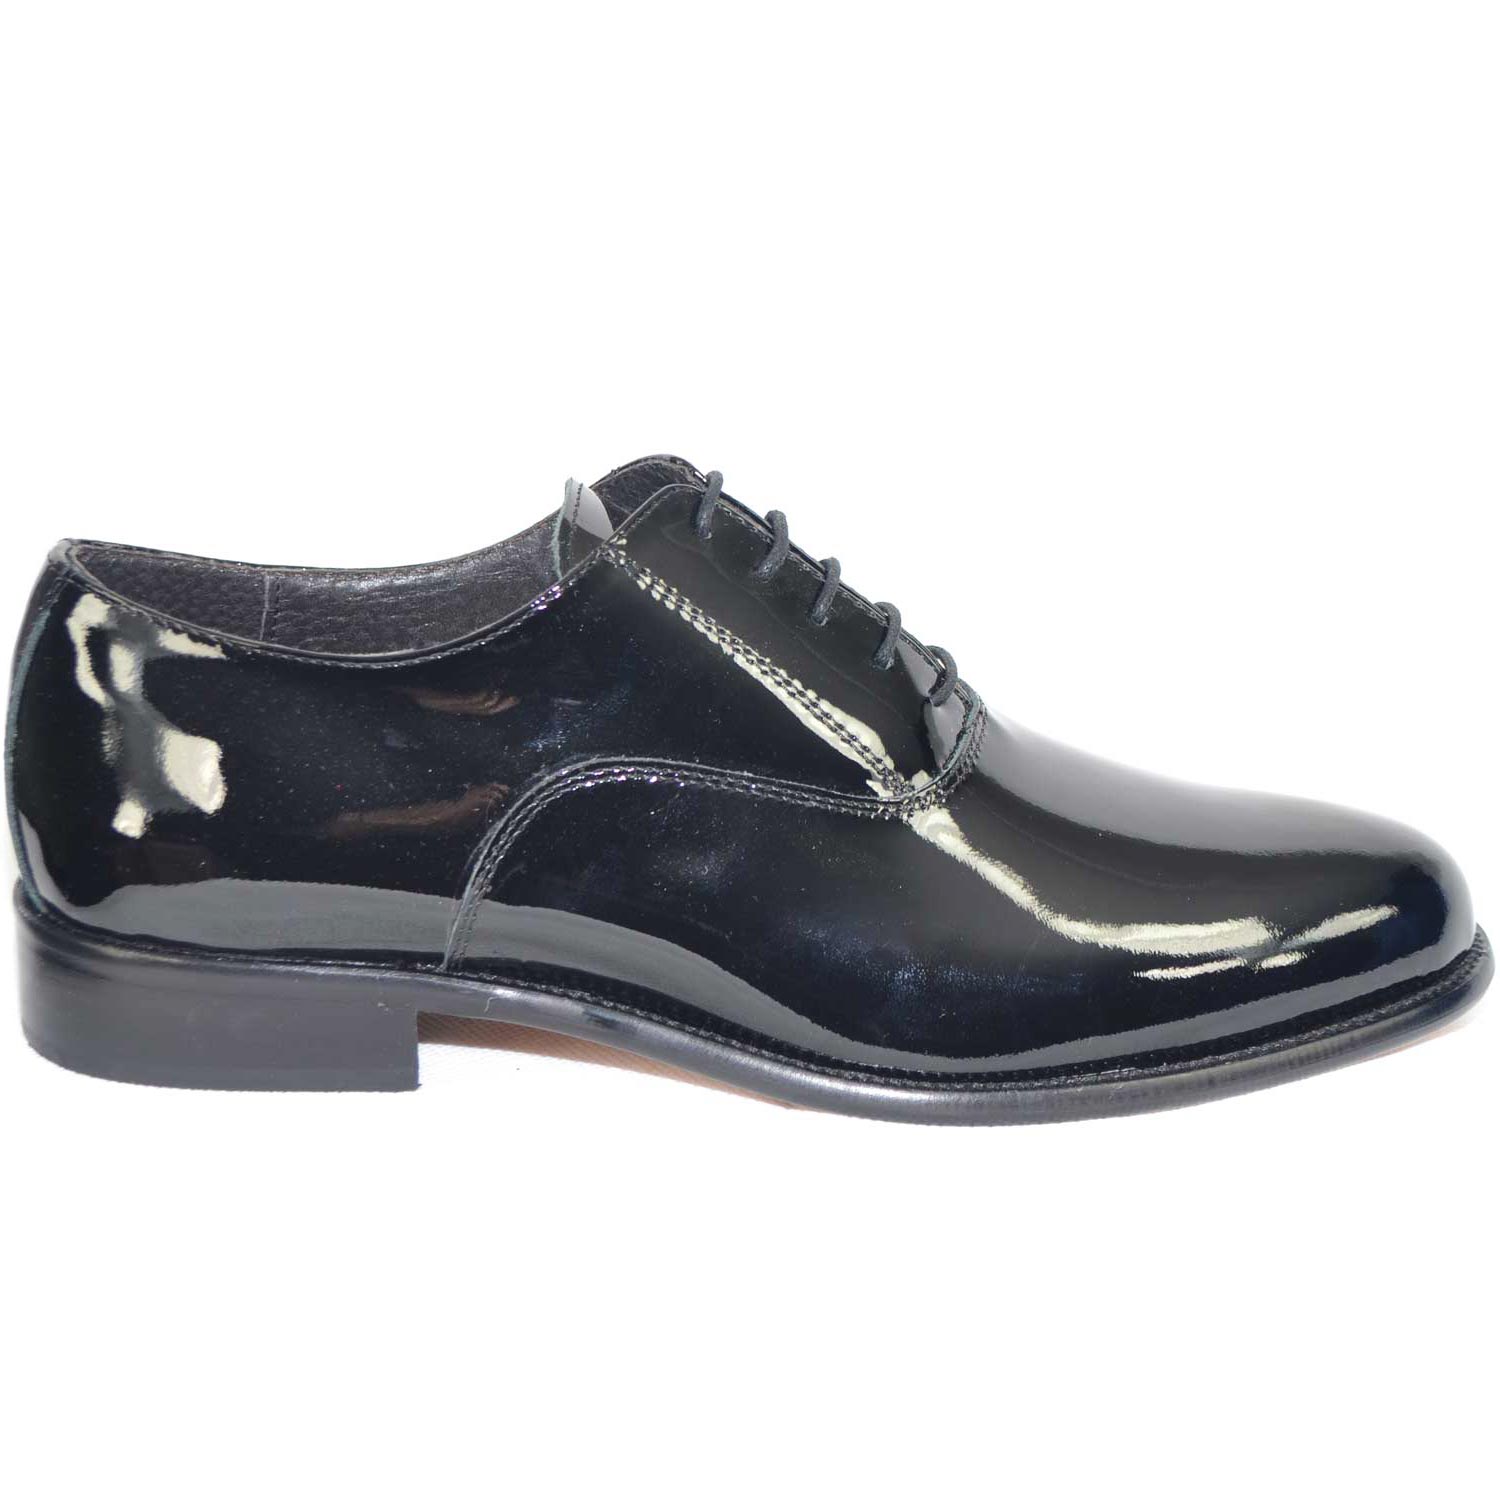 Scarpe calzature business man eleganti colore nero vernice vera pelle made in italy fondo in vero cuoio art 018 MP.